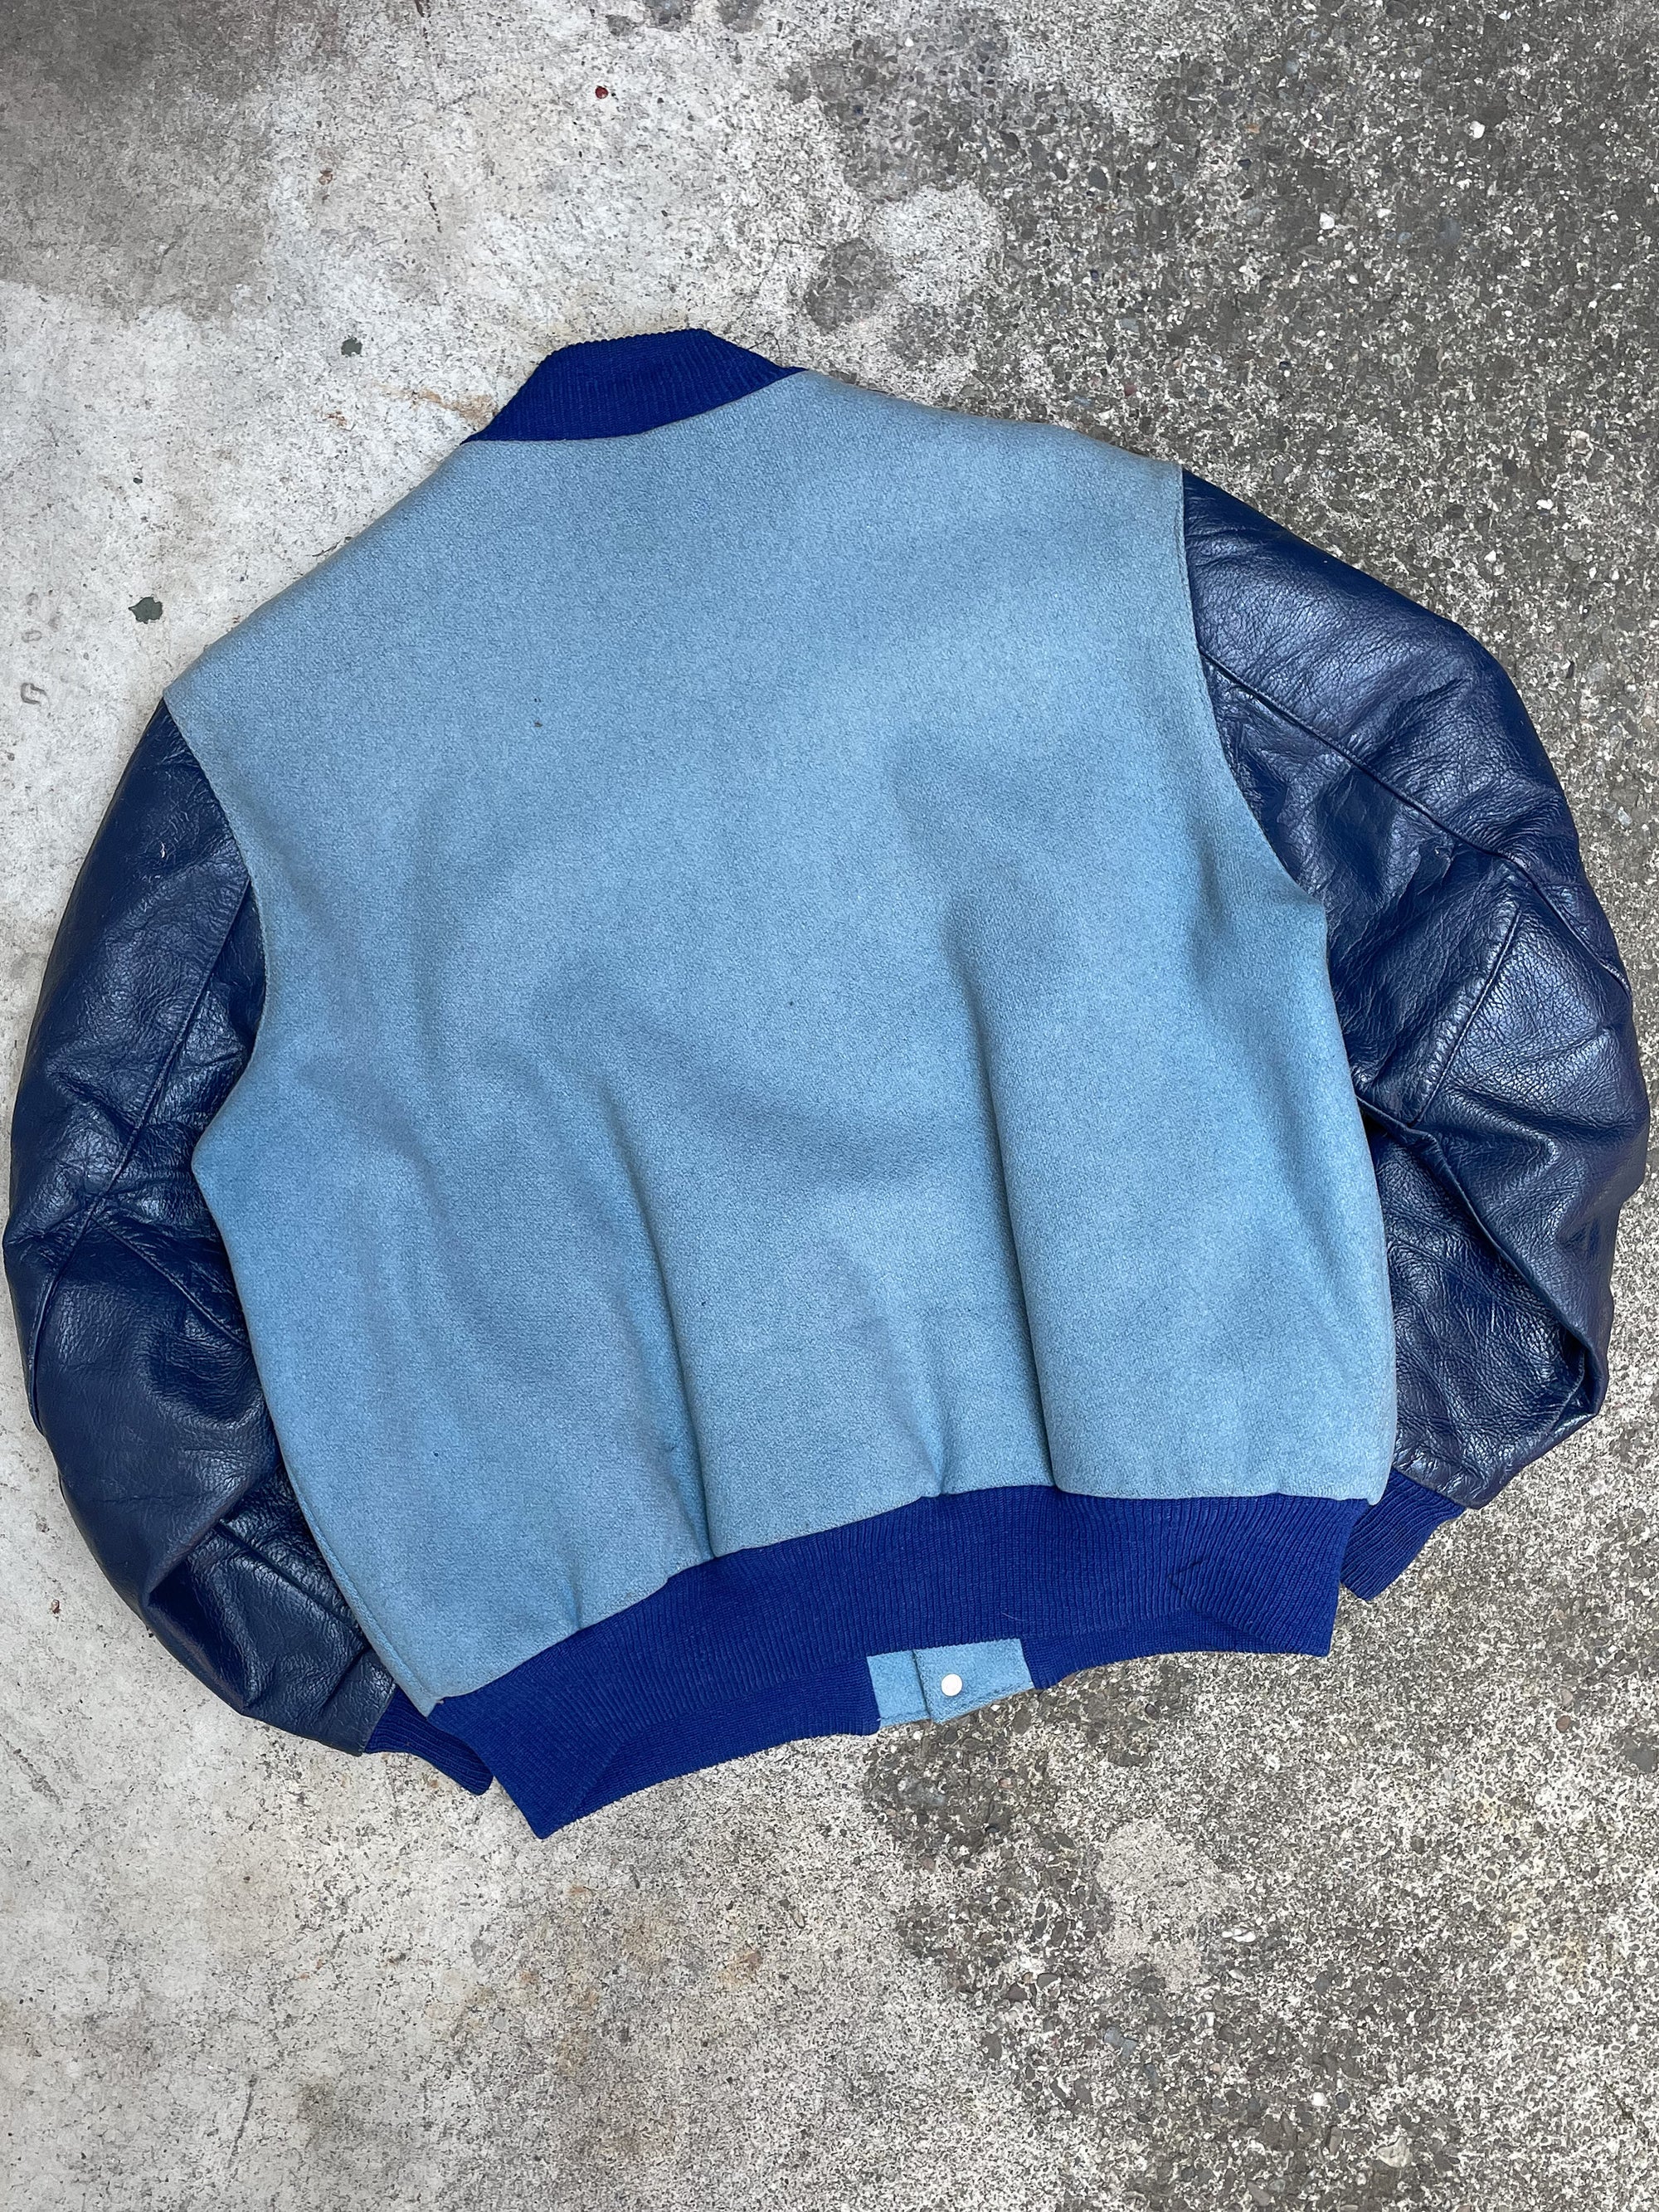 1980s “Stein Haus” Chain Stitched Varsity Jacket (L)